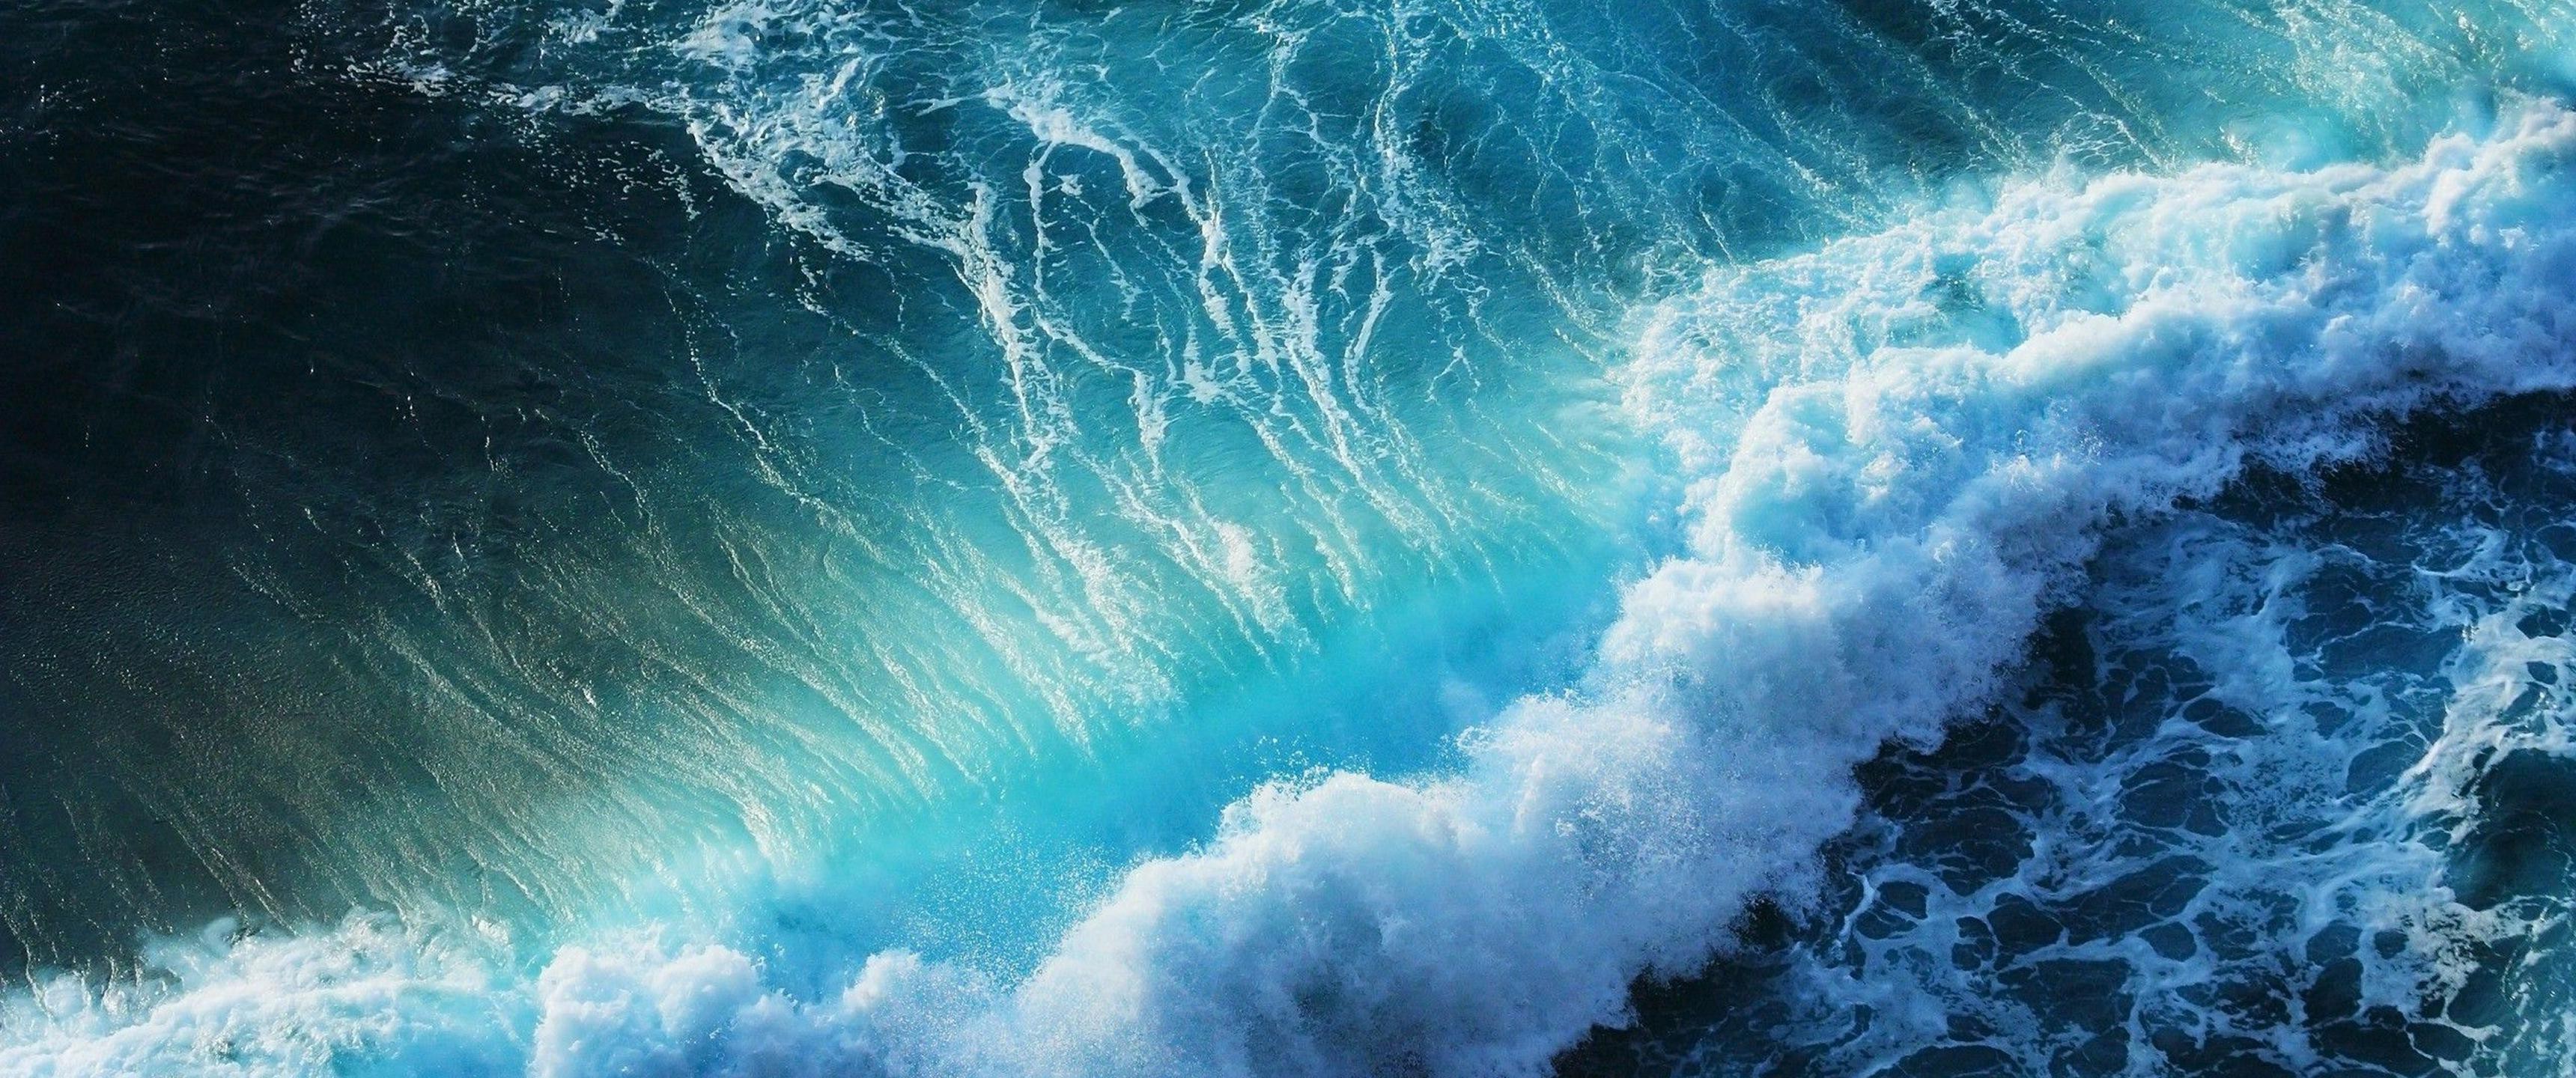 ultra wide wallpaper 3440x1440,wave,blue,water,sky,wind wave